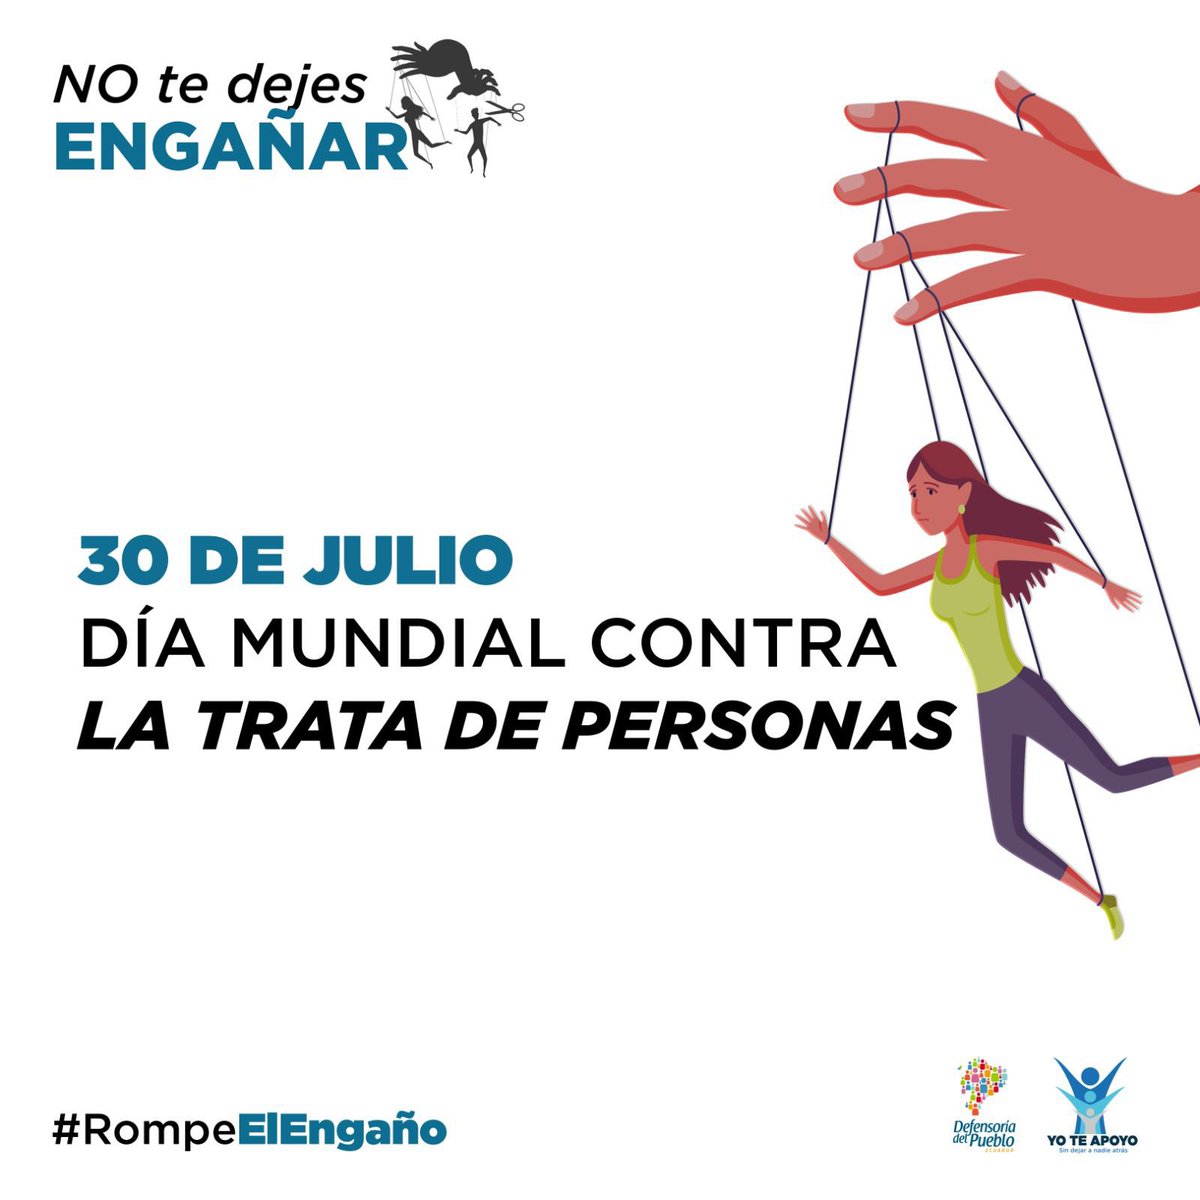 No ignores señales de peligro, denuncia la trata de personas. #RompeElEngaño ✂️🎭 #NoTeDejesEngañar 🚫